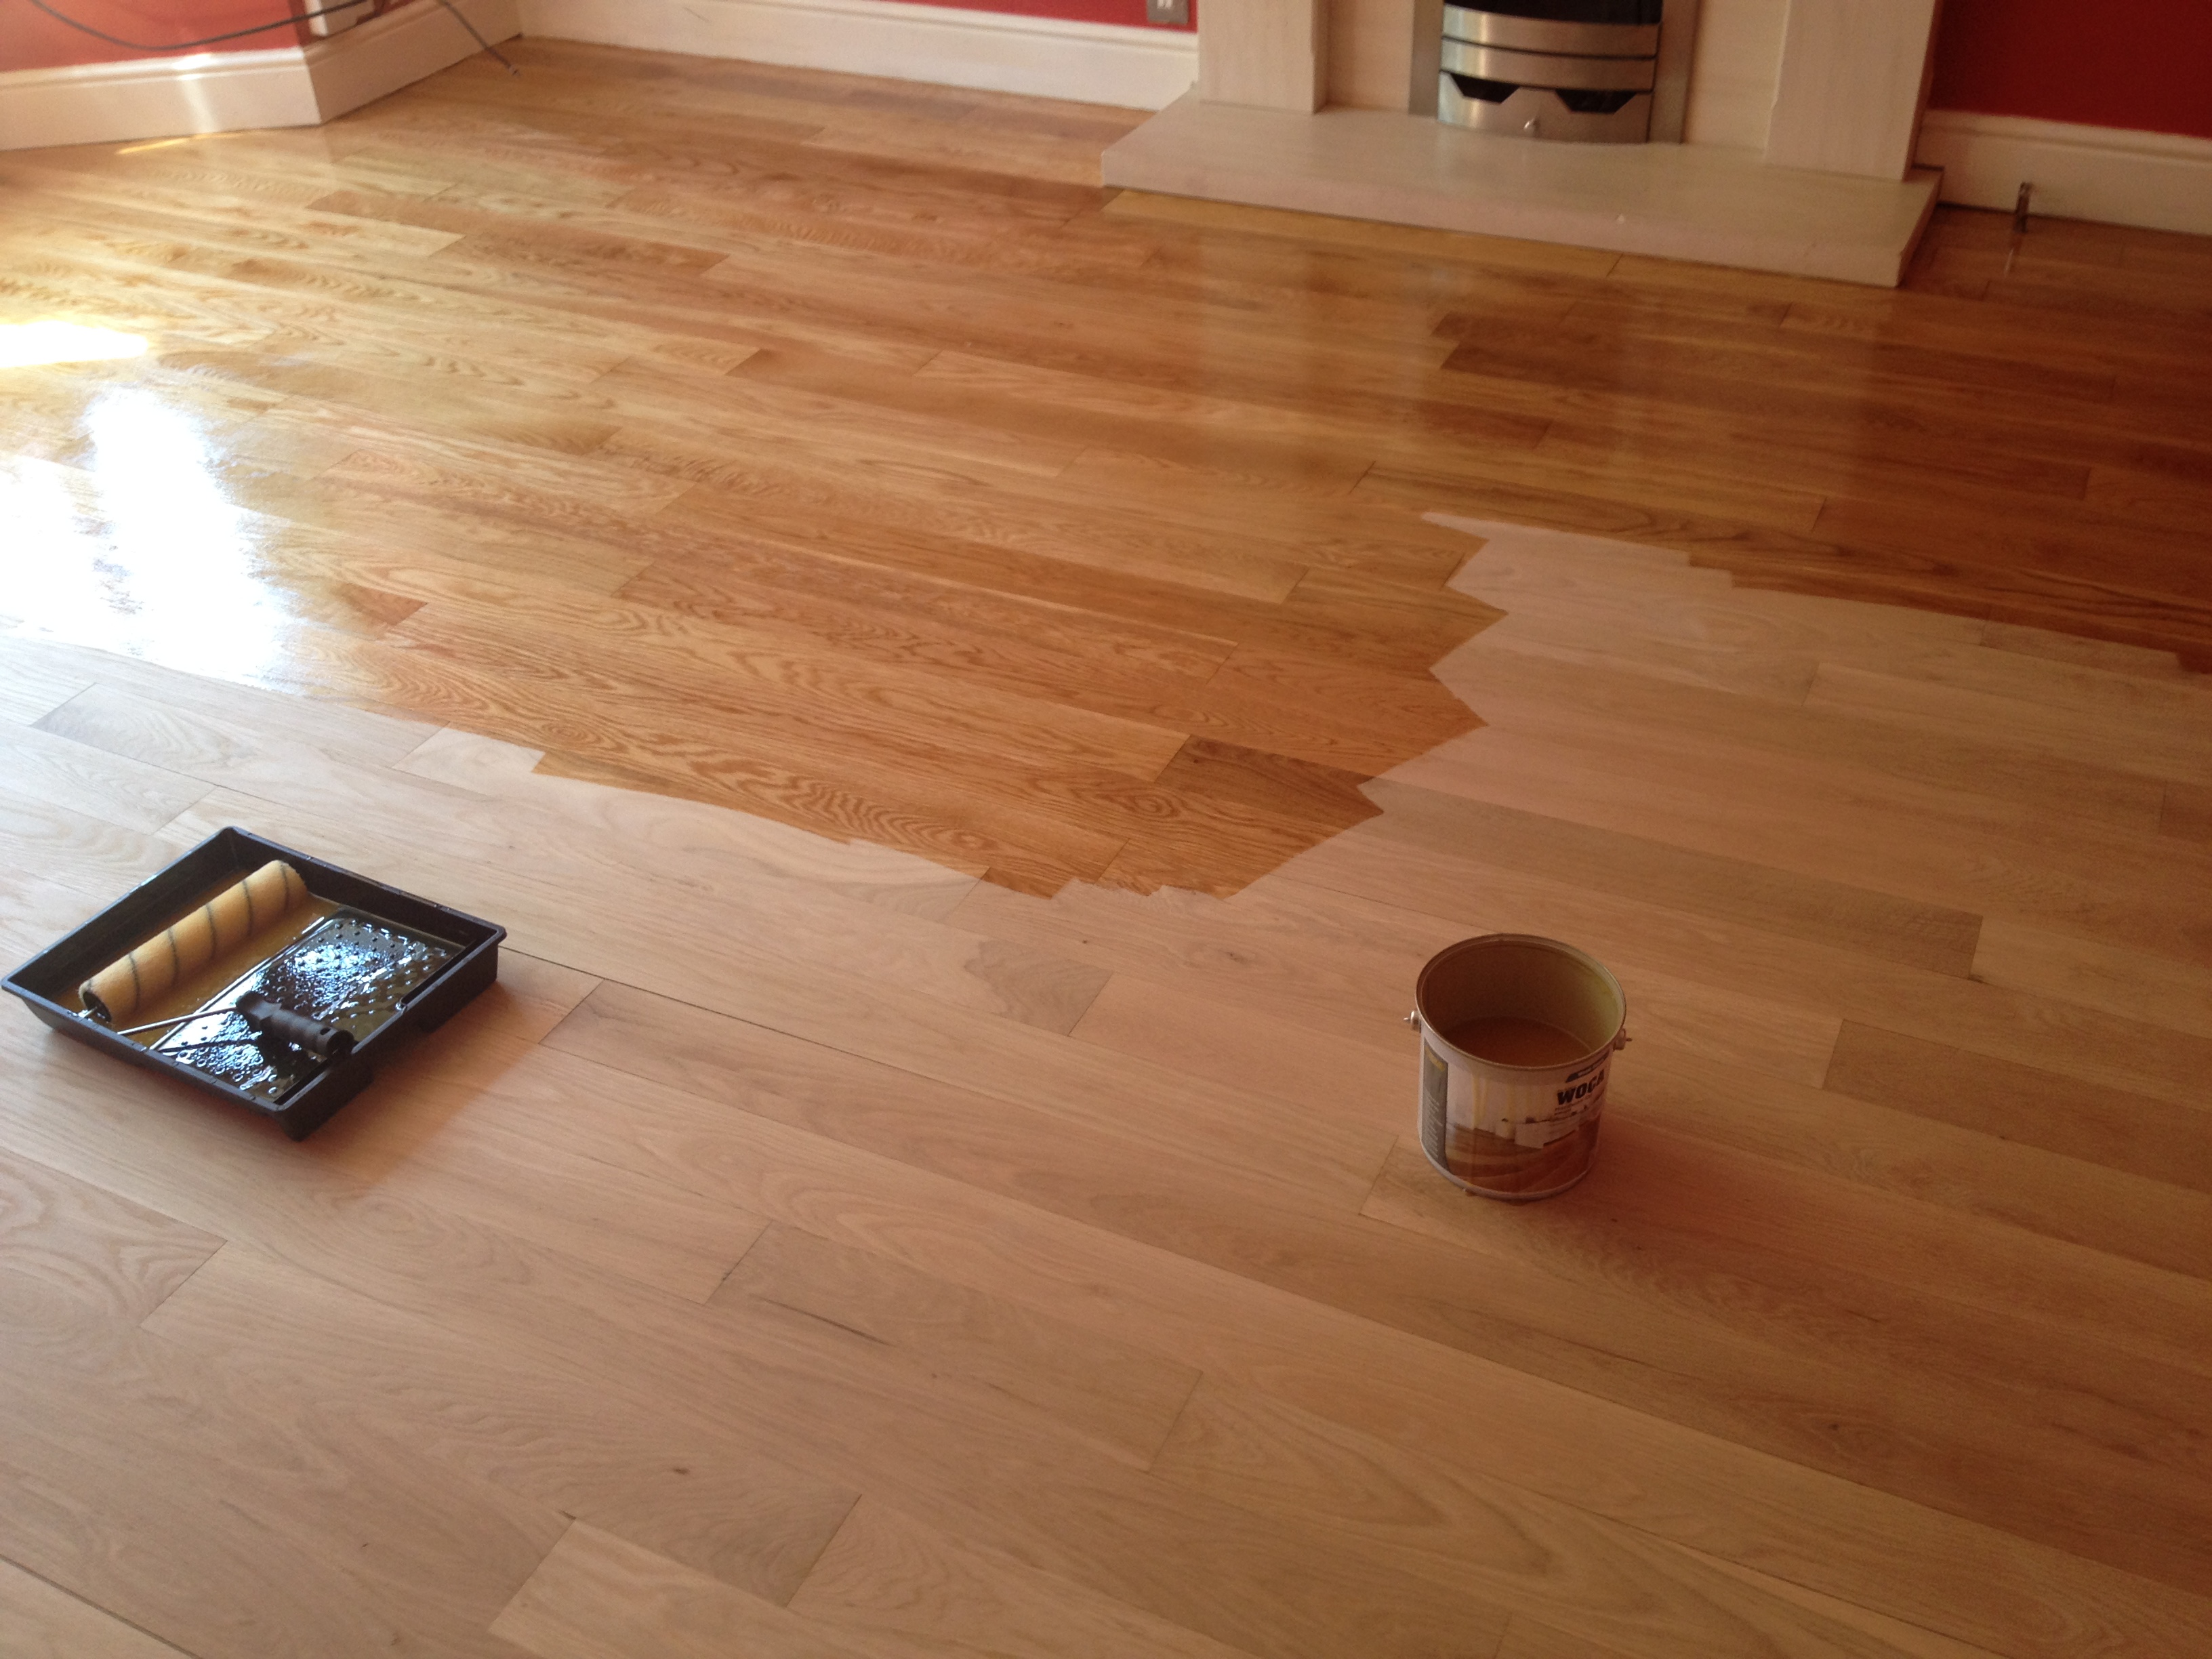 Wooden Floor Absolute Sanding, Hardwood Floor Clear Coat